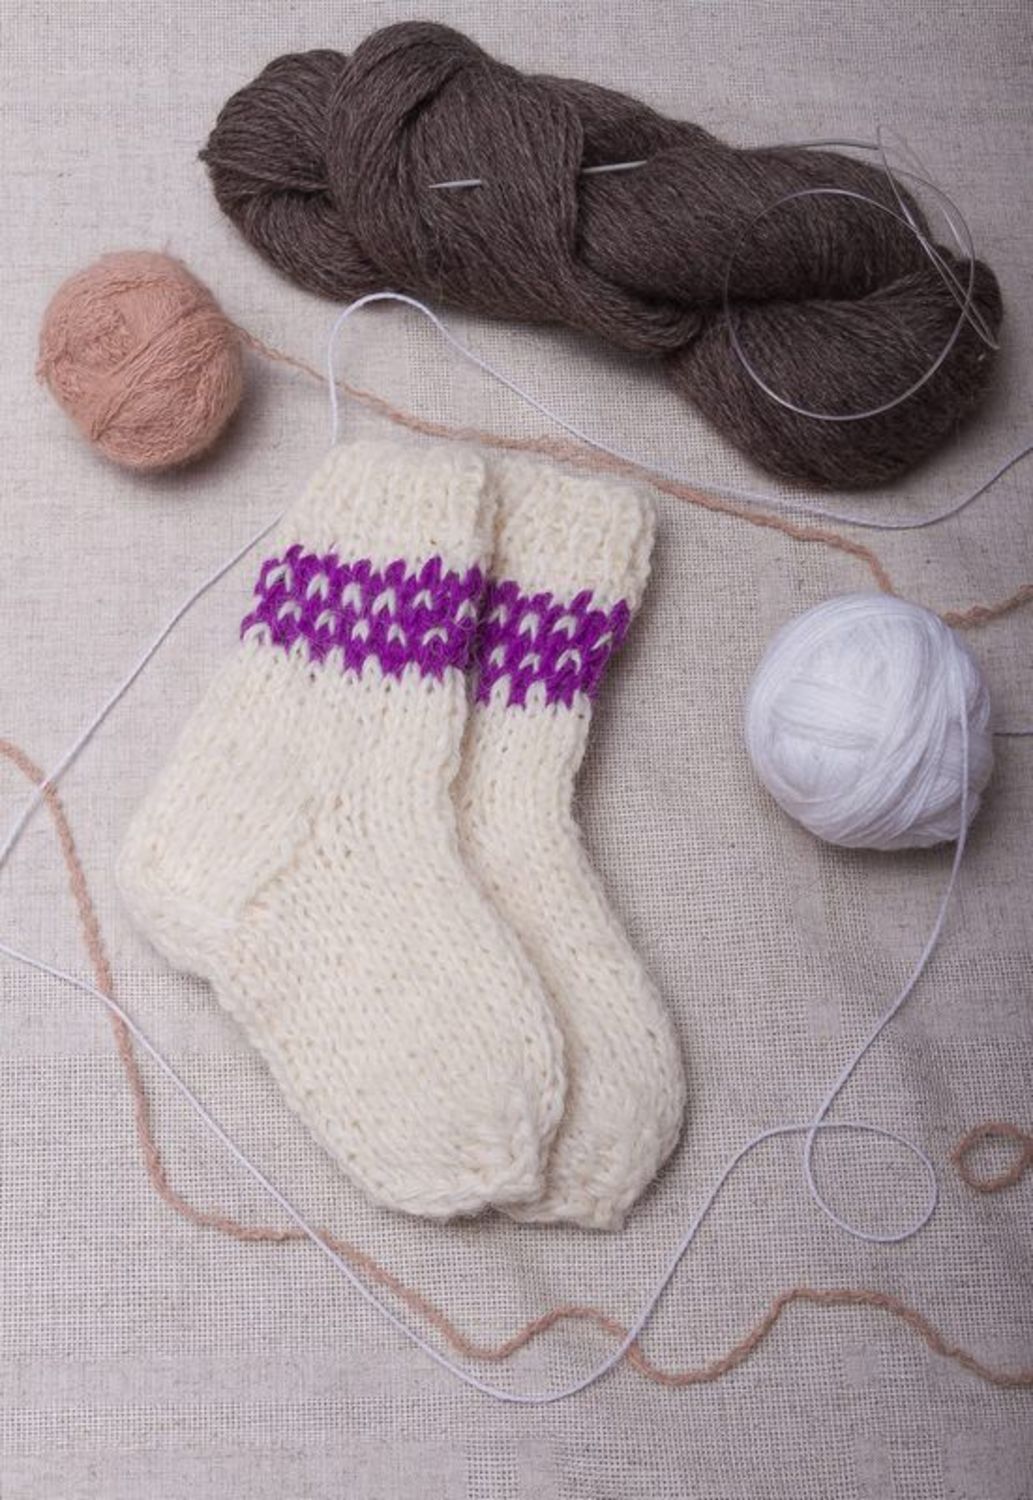 Les chaussettes douces en laine photo 1